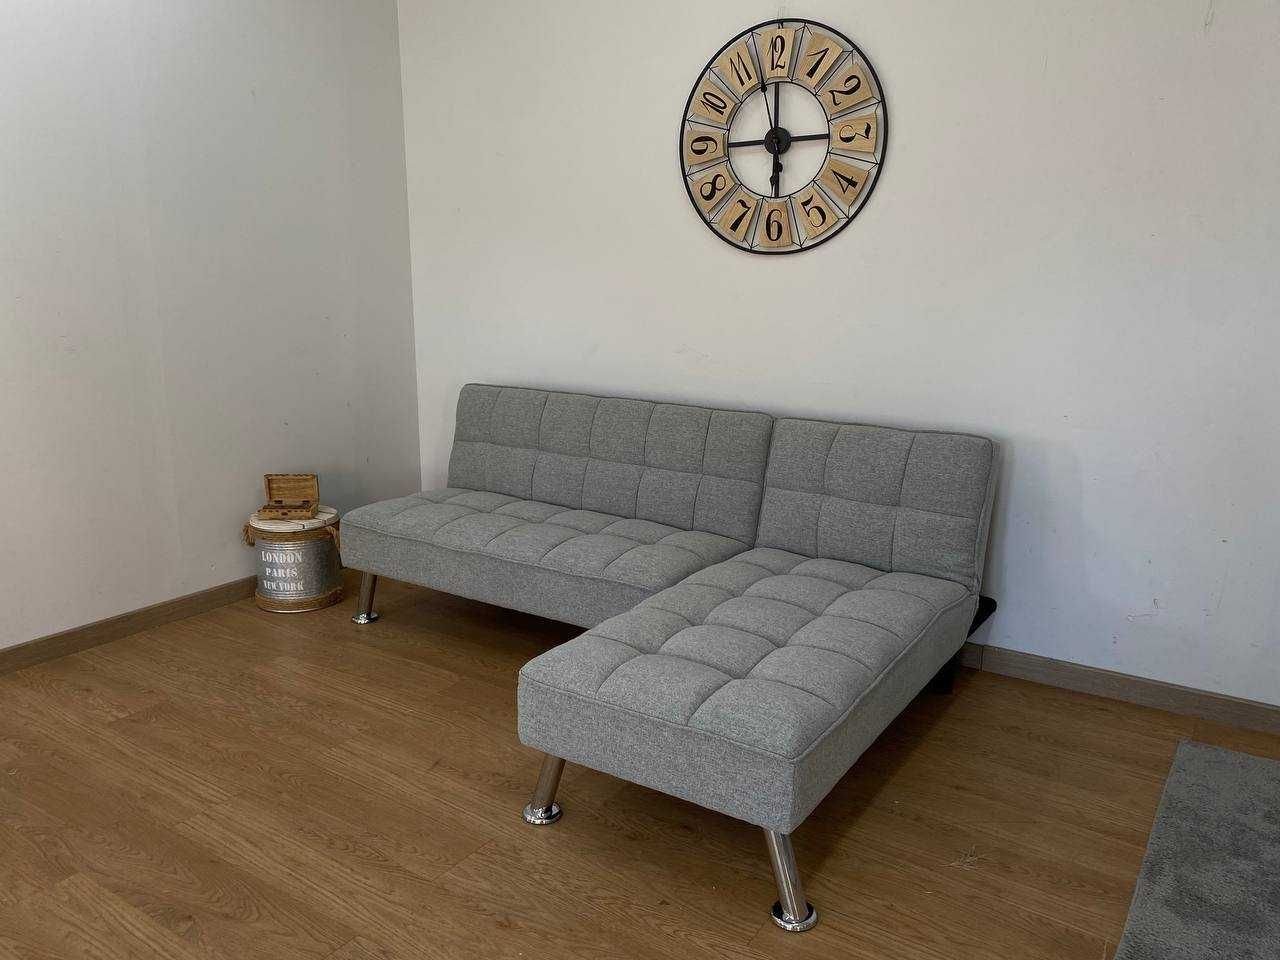 Oferta de sofá-cama Clik clak disponível em 2 cores